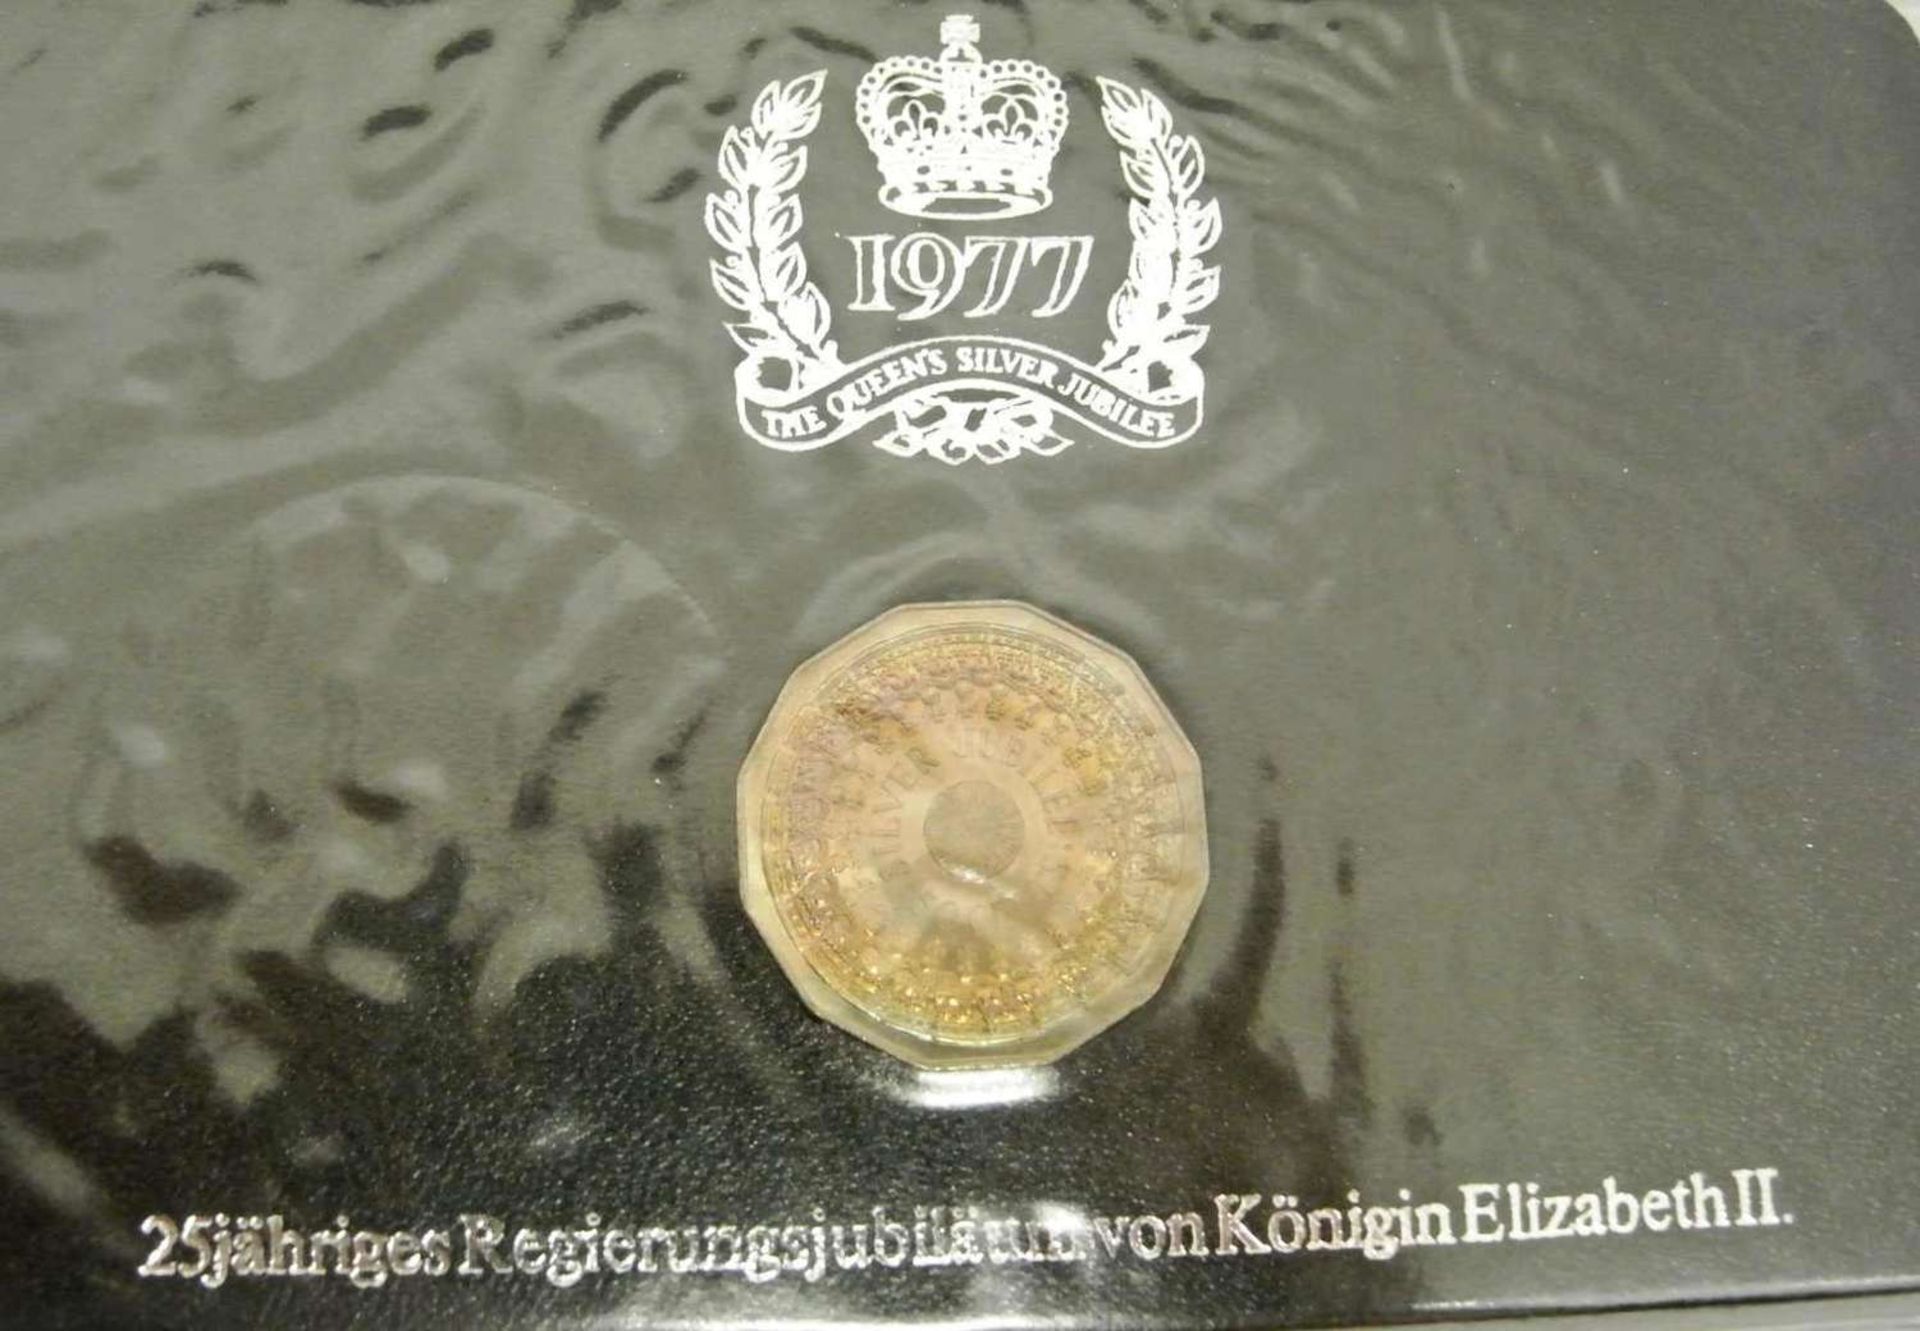 Lot Münzen 1977, 25jähriges Regierungsjubiläum von Königin Elisabeth II., dabei 1x1 Dollar Kanada - Bild 4 aus 5